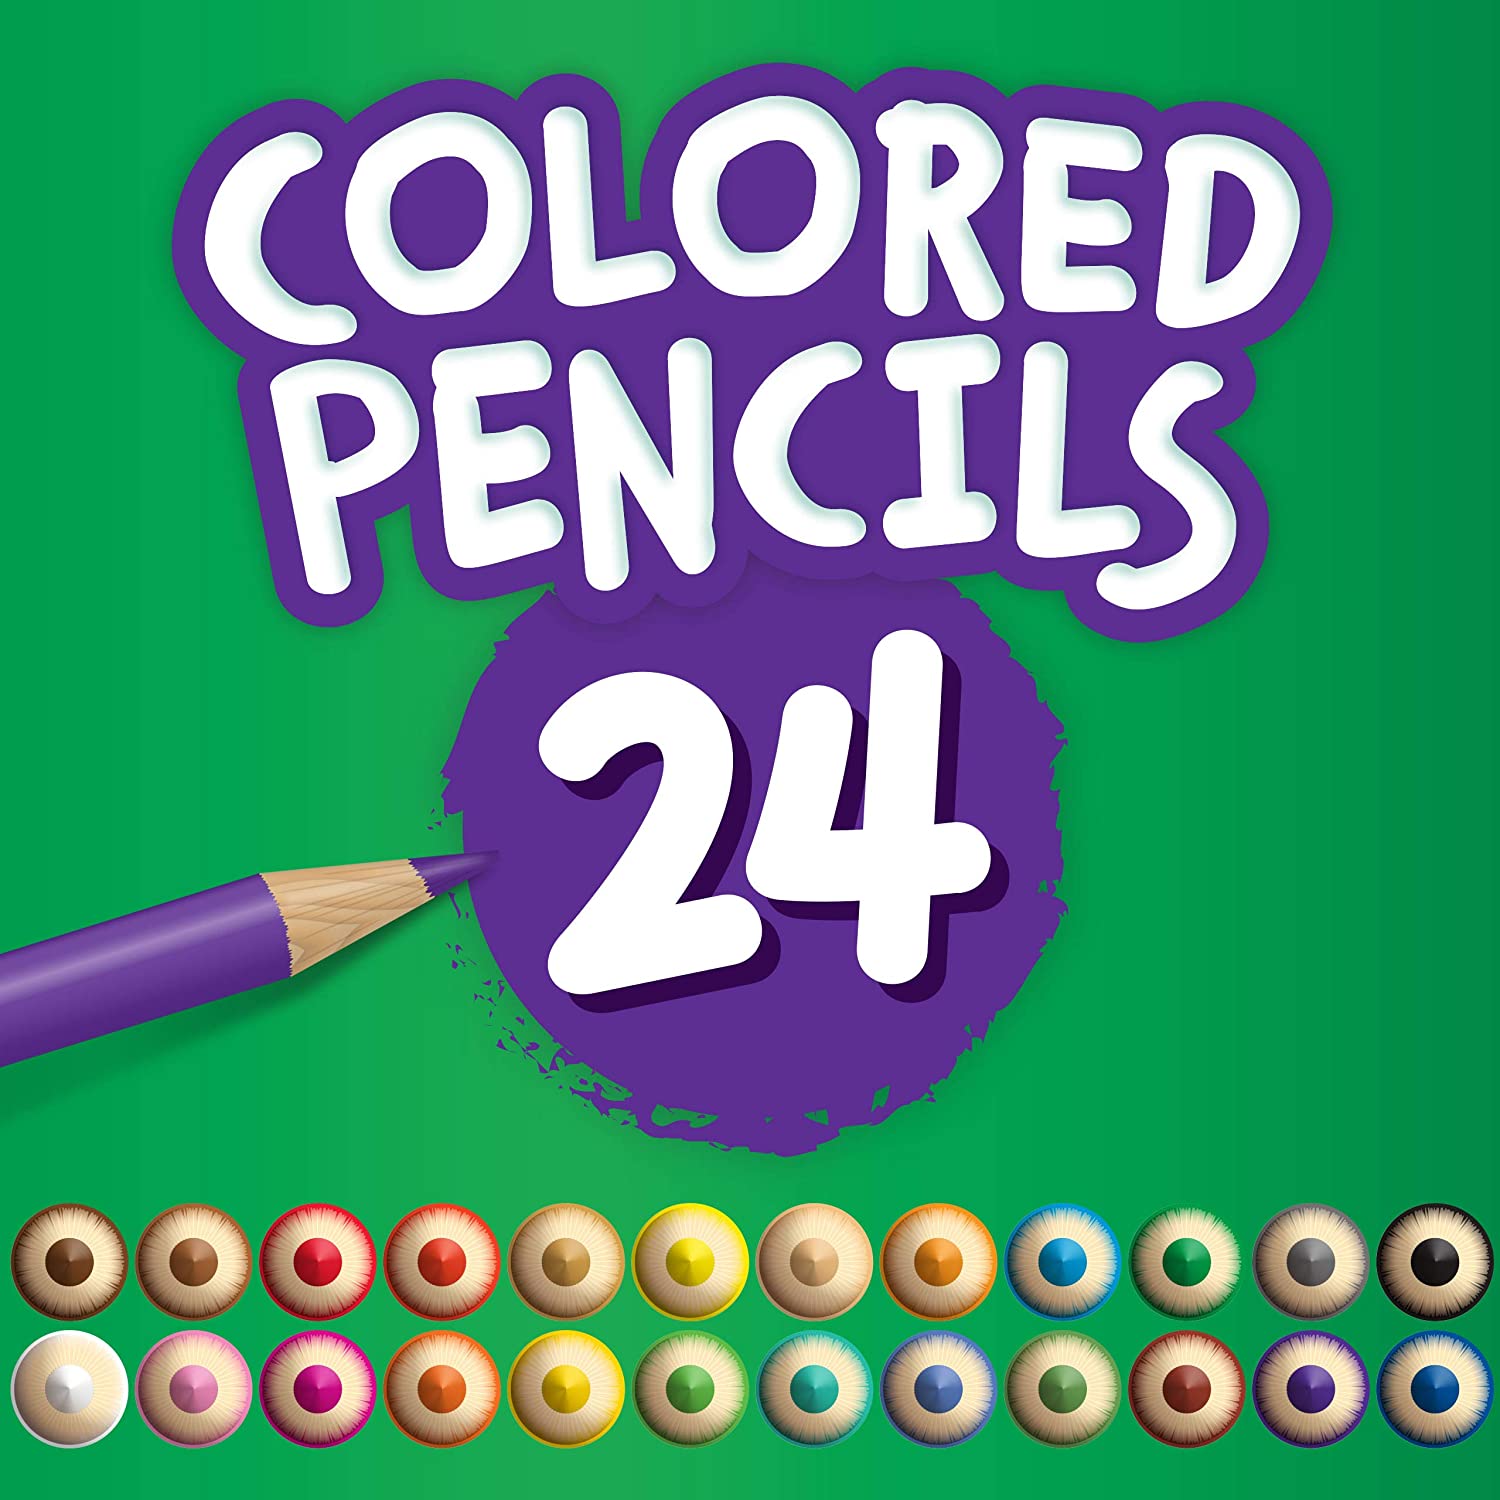 Crayola 24 Coloured Pencils